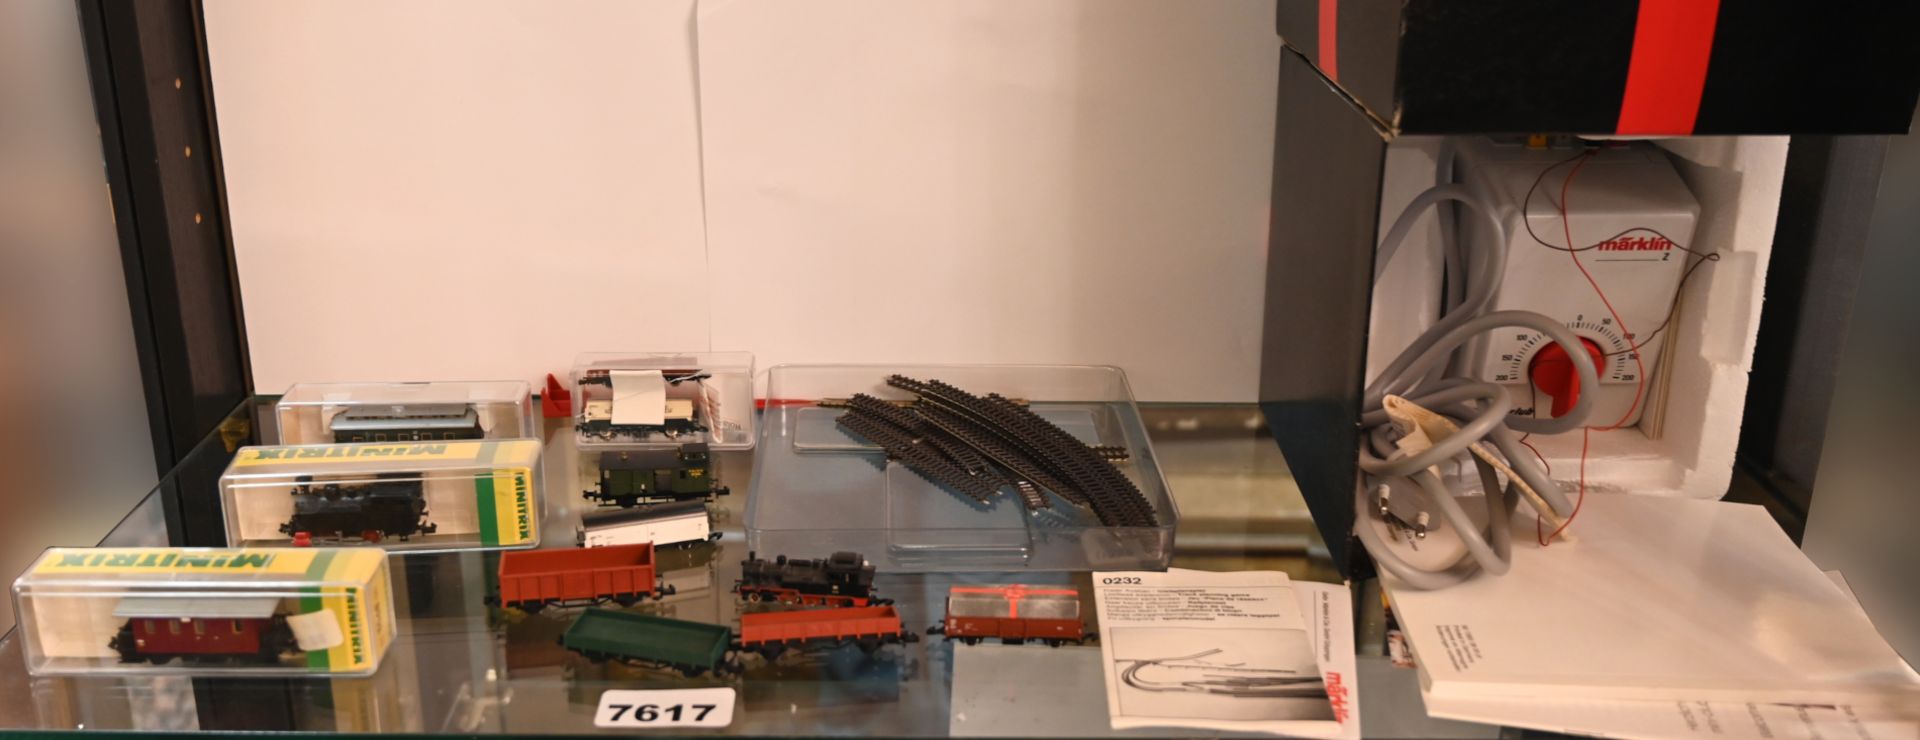 1 Konv. Modelleisenbahn MÄRKLIN, FLEISCHMANN, MINITRIX: 2 Dampflokomotiven, 10 Waggons, Schienen, u. - Bild 3 aus 3